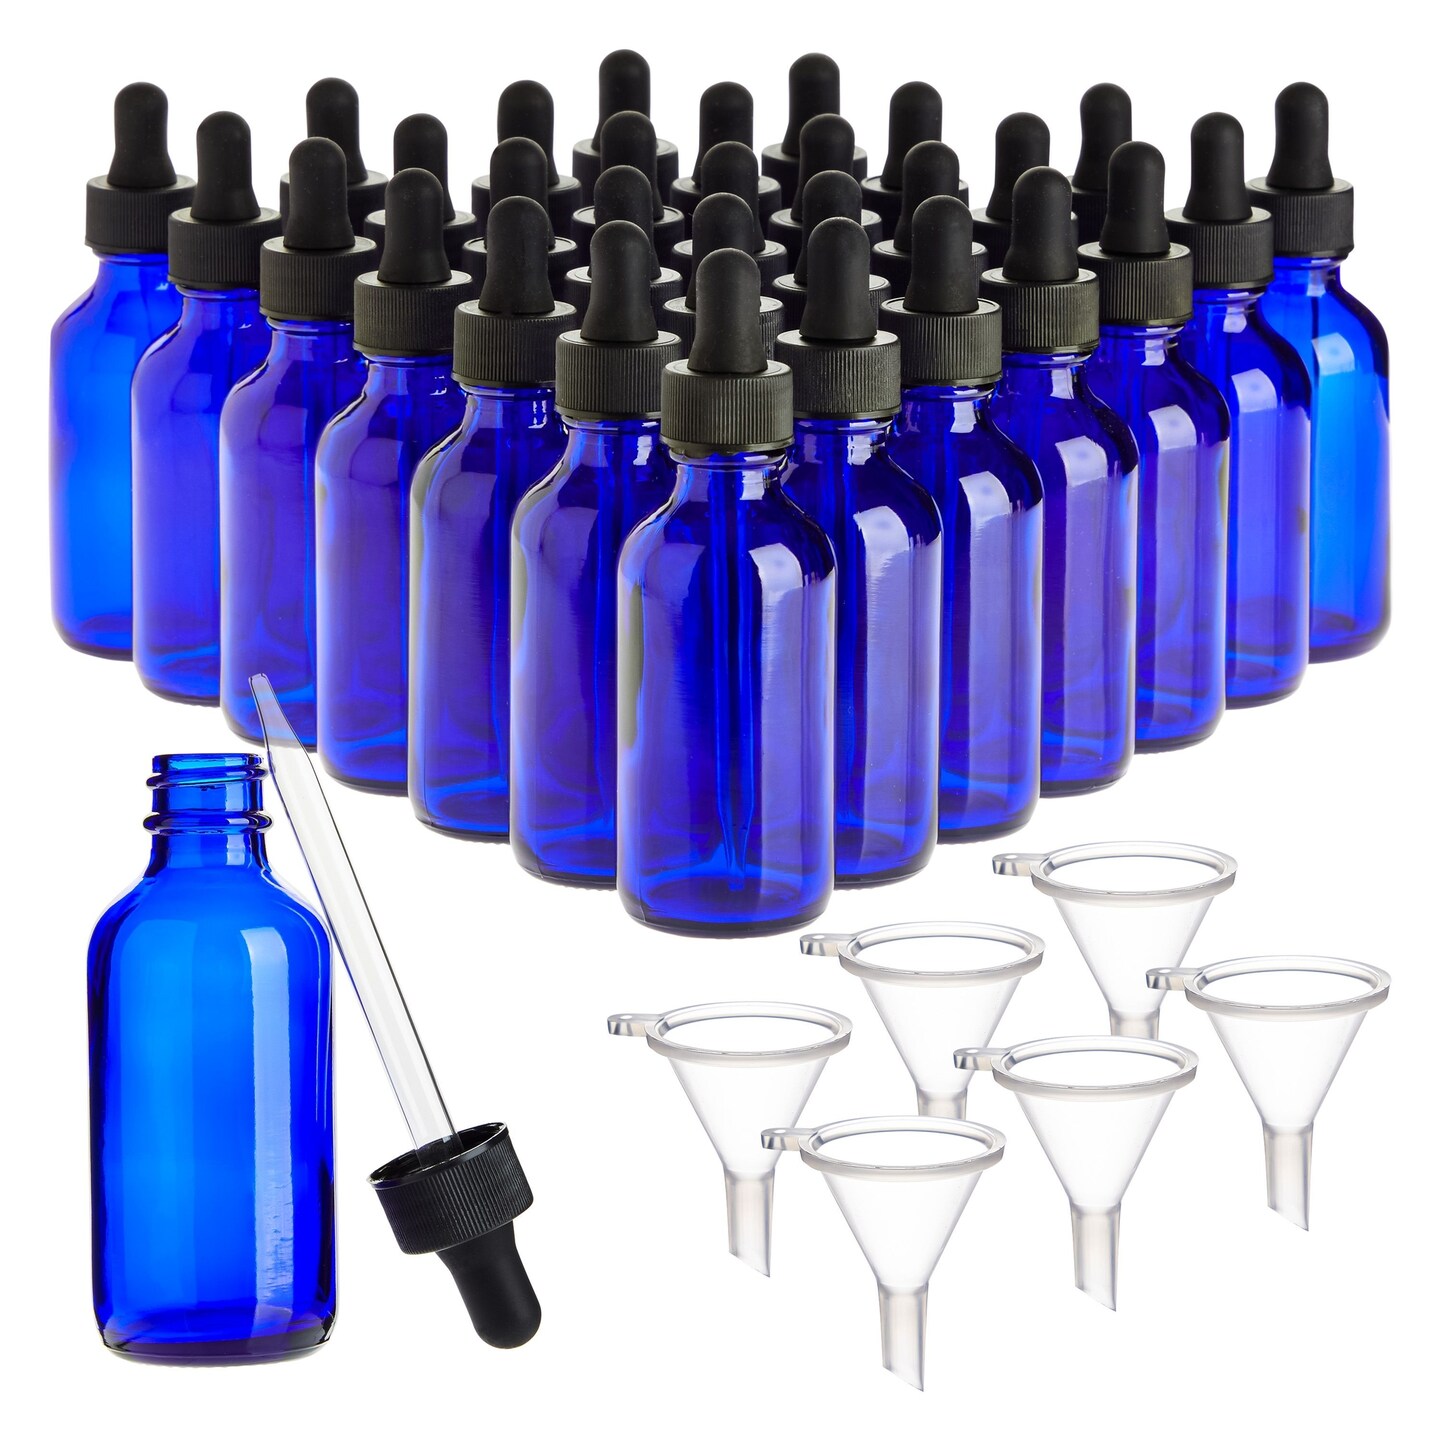 2oz. Glass Travel Spray Bottles - 4 Pack